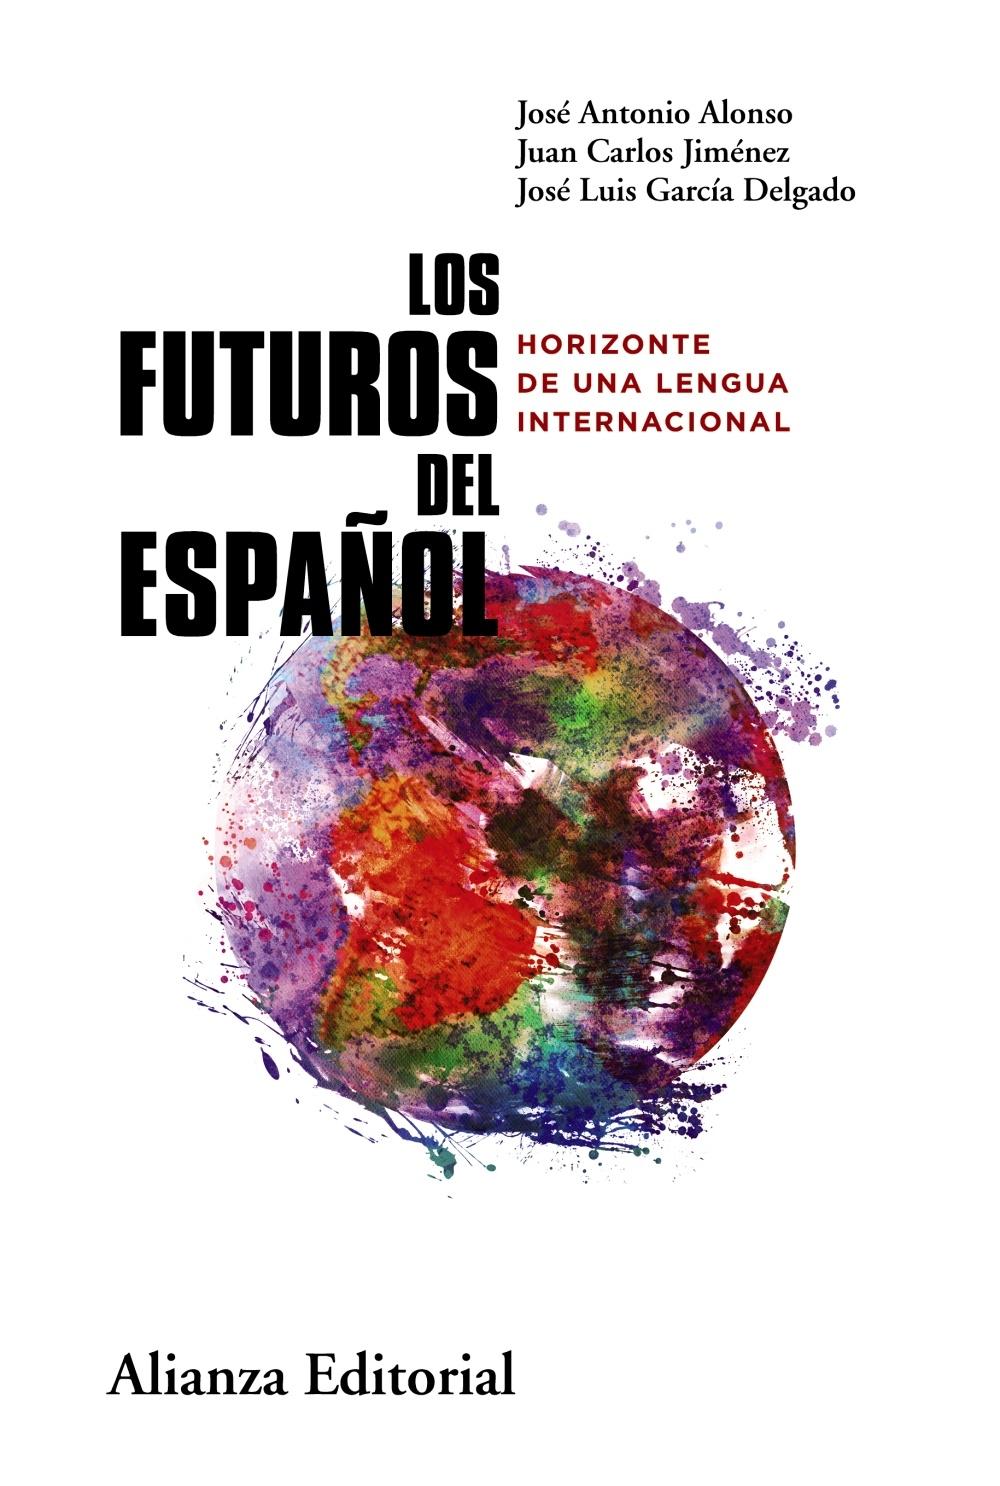 Los Futuros del Español "Horizonte de una Lengua Internacional"